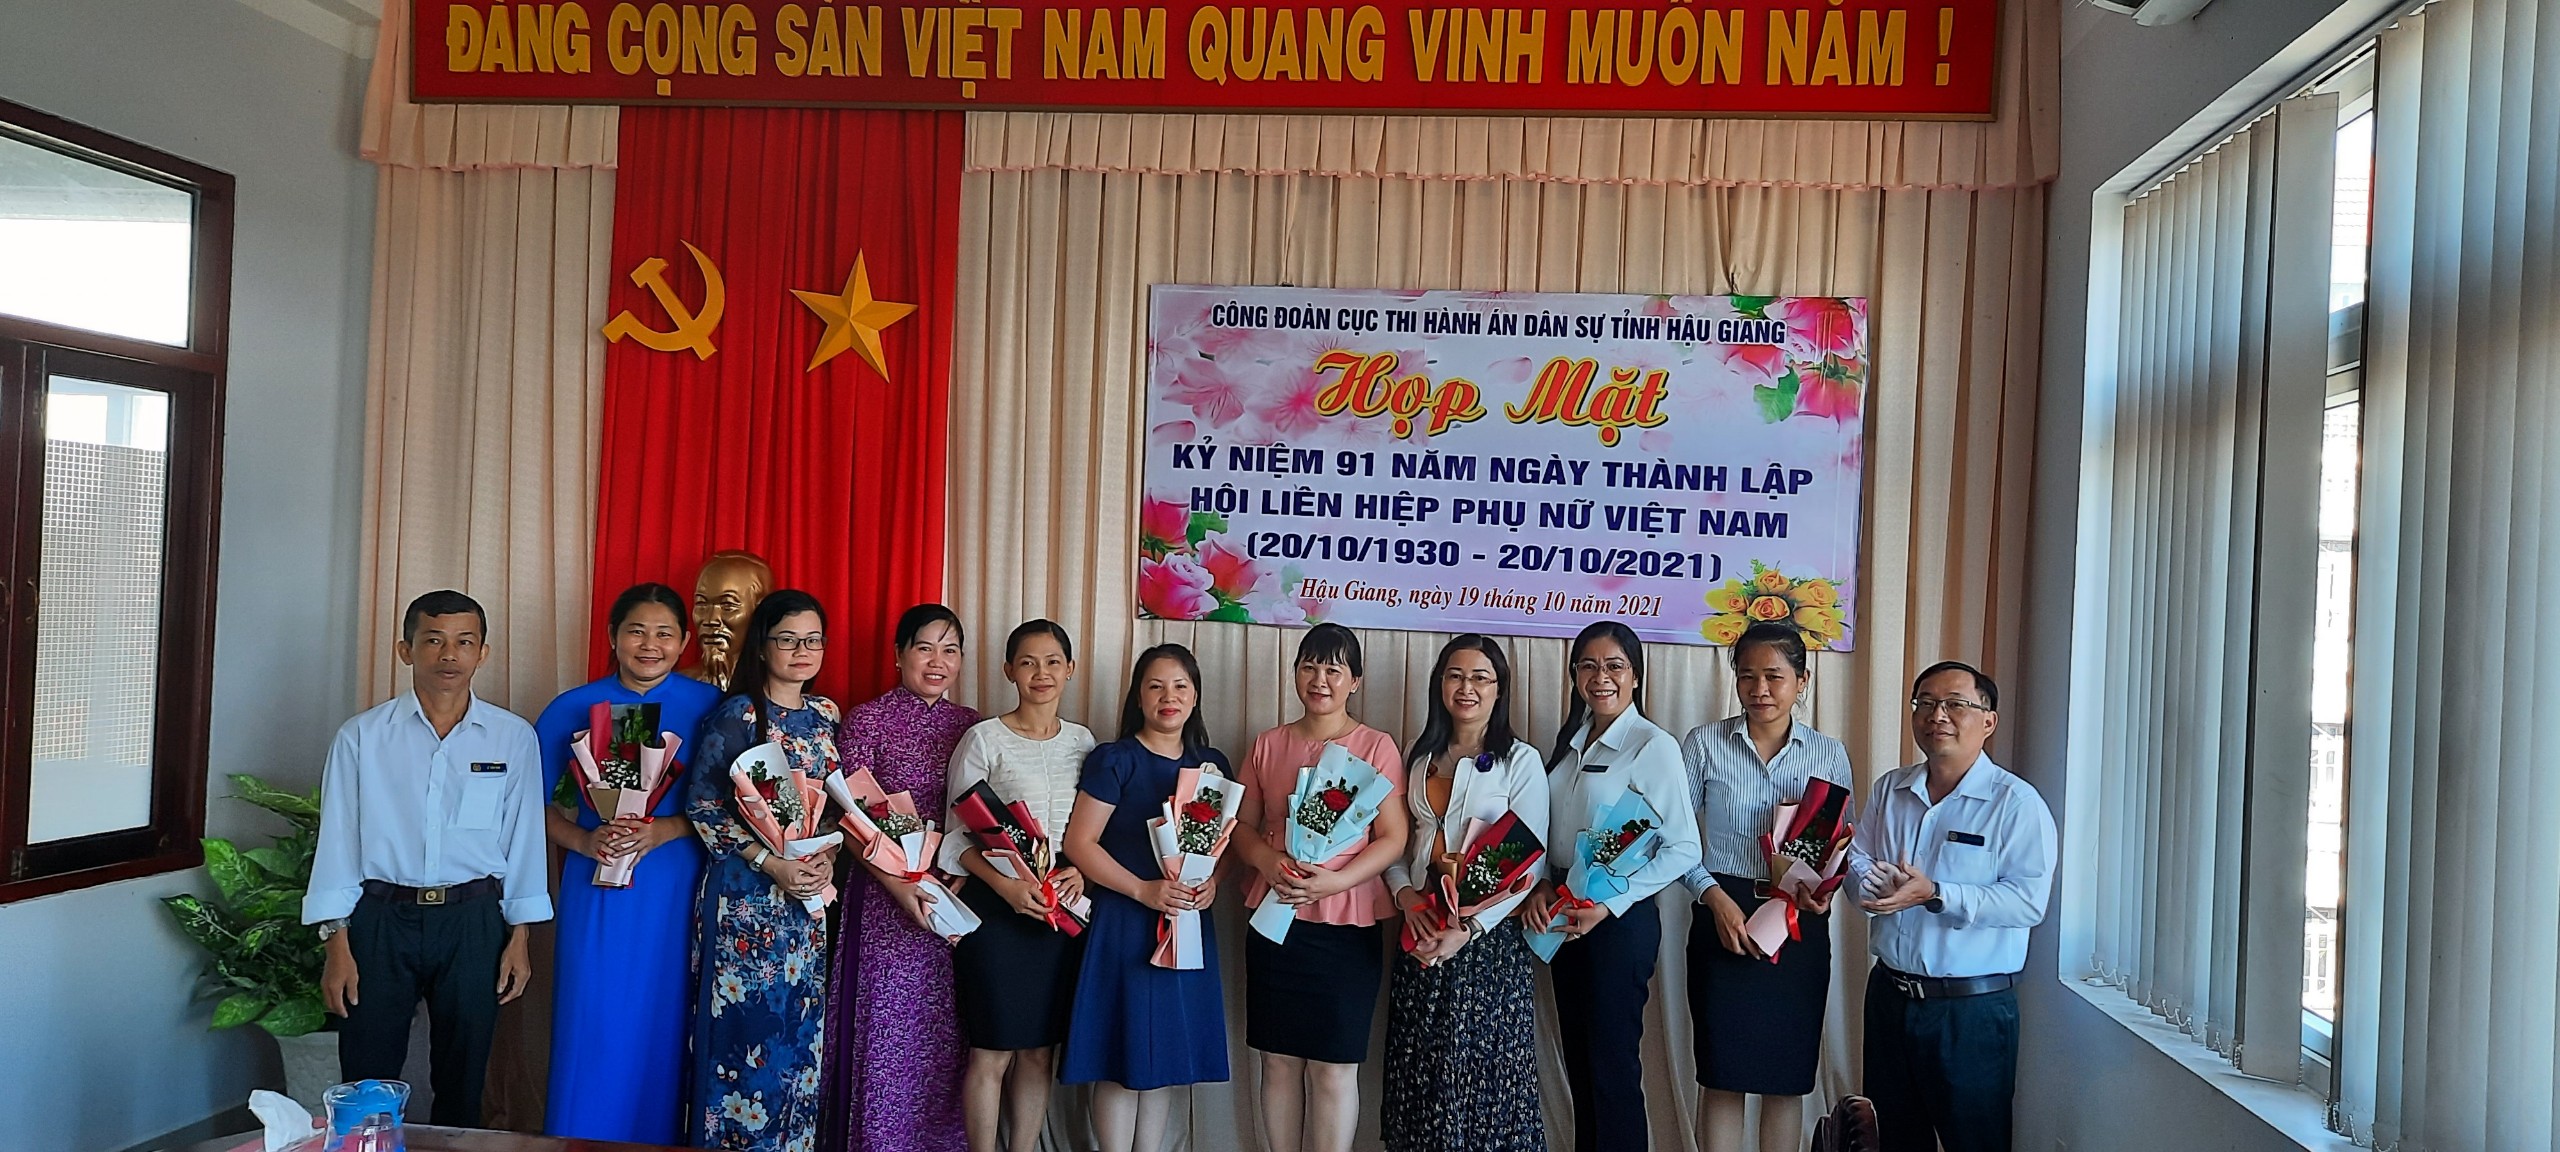 Công đoàn cơ sở Cục Thi hành án dân sự tỉnh Hậu Giang tổ chức họp mặt kỷ niệm 91 năm Ngày thành lập Hội liên hiệp Phụ nữ Việt Nam (20/10/1930 - 20/10/2021)